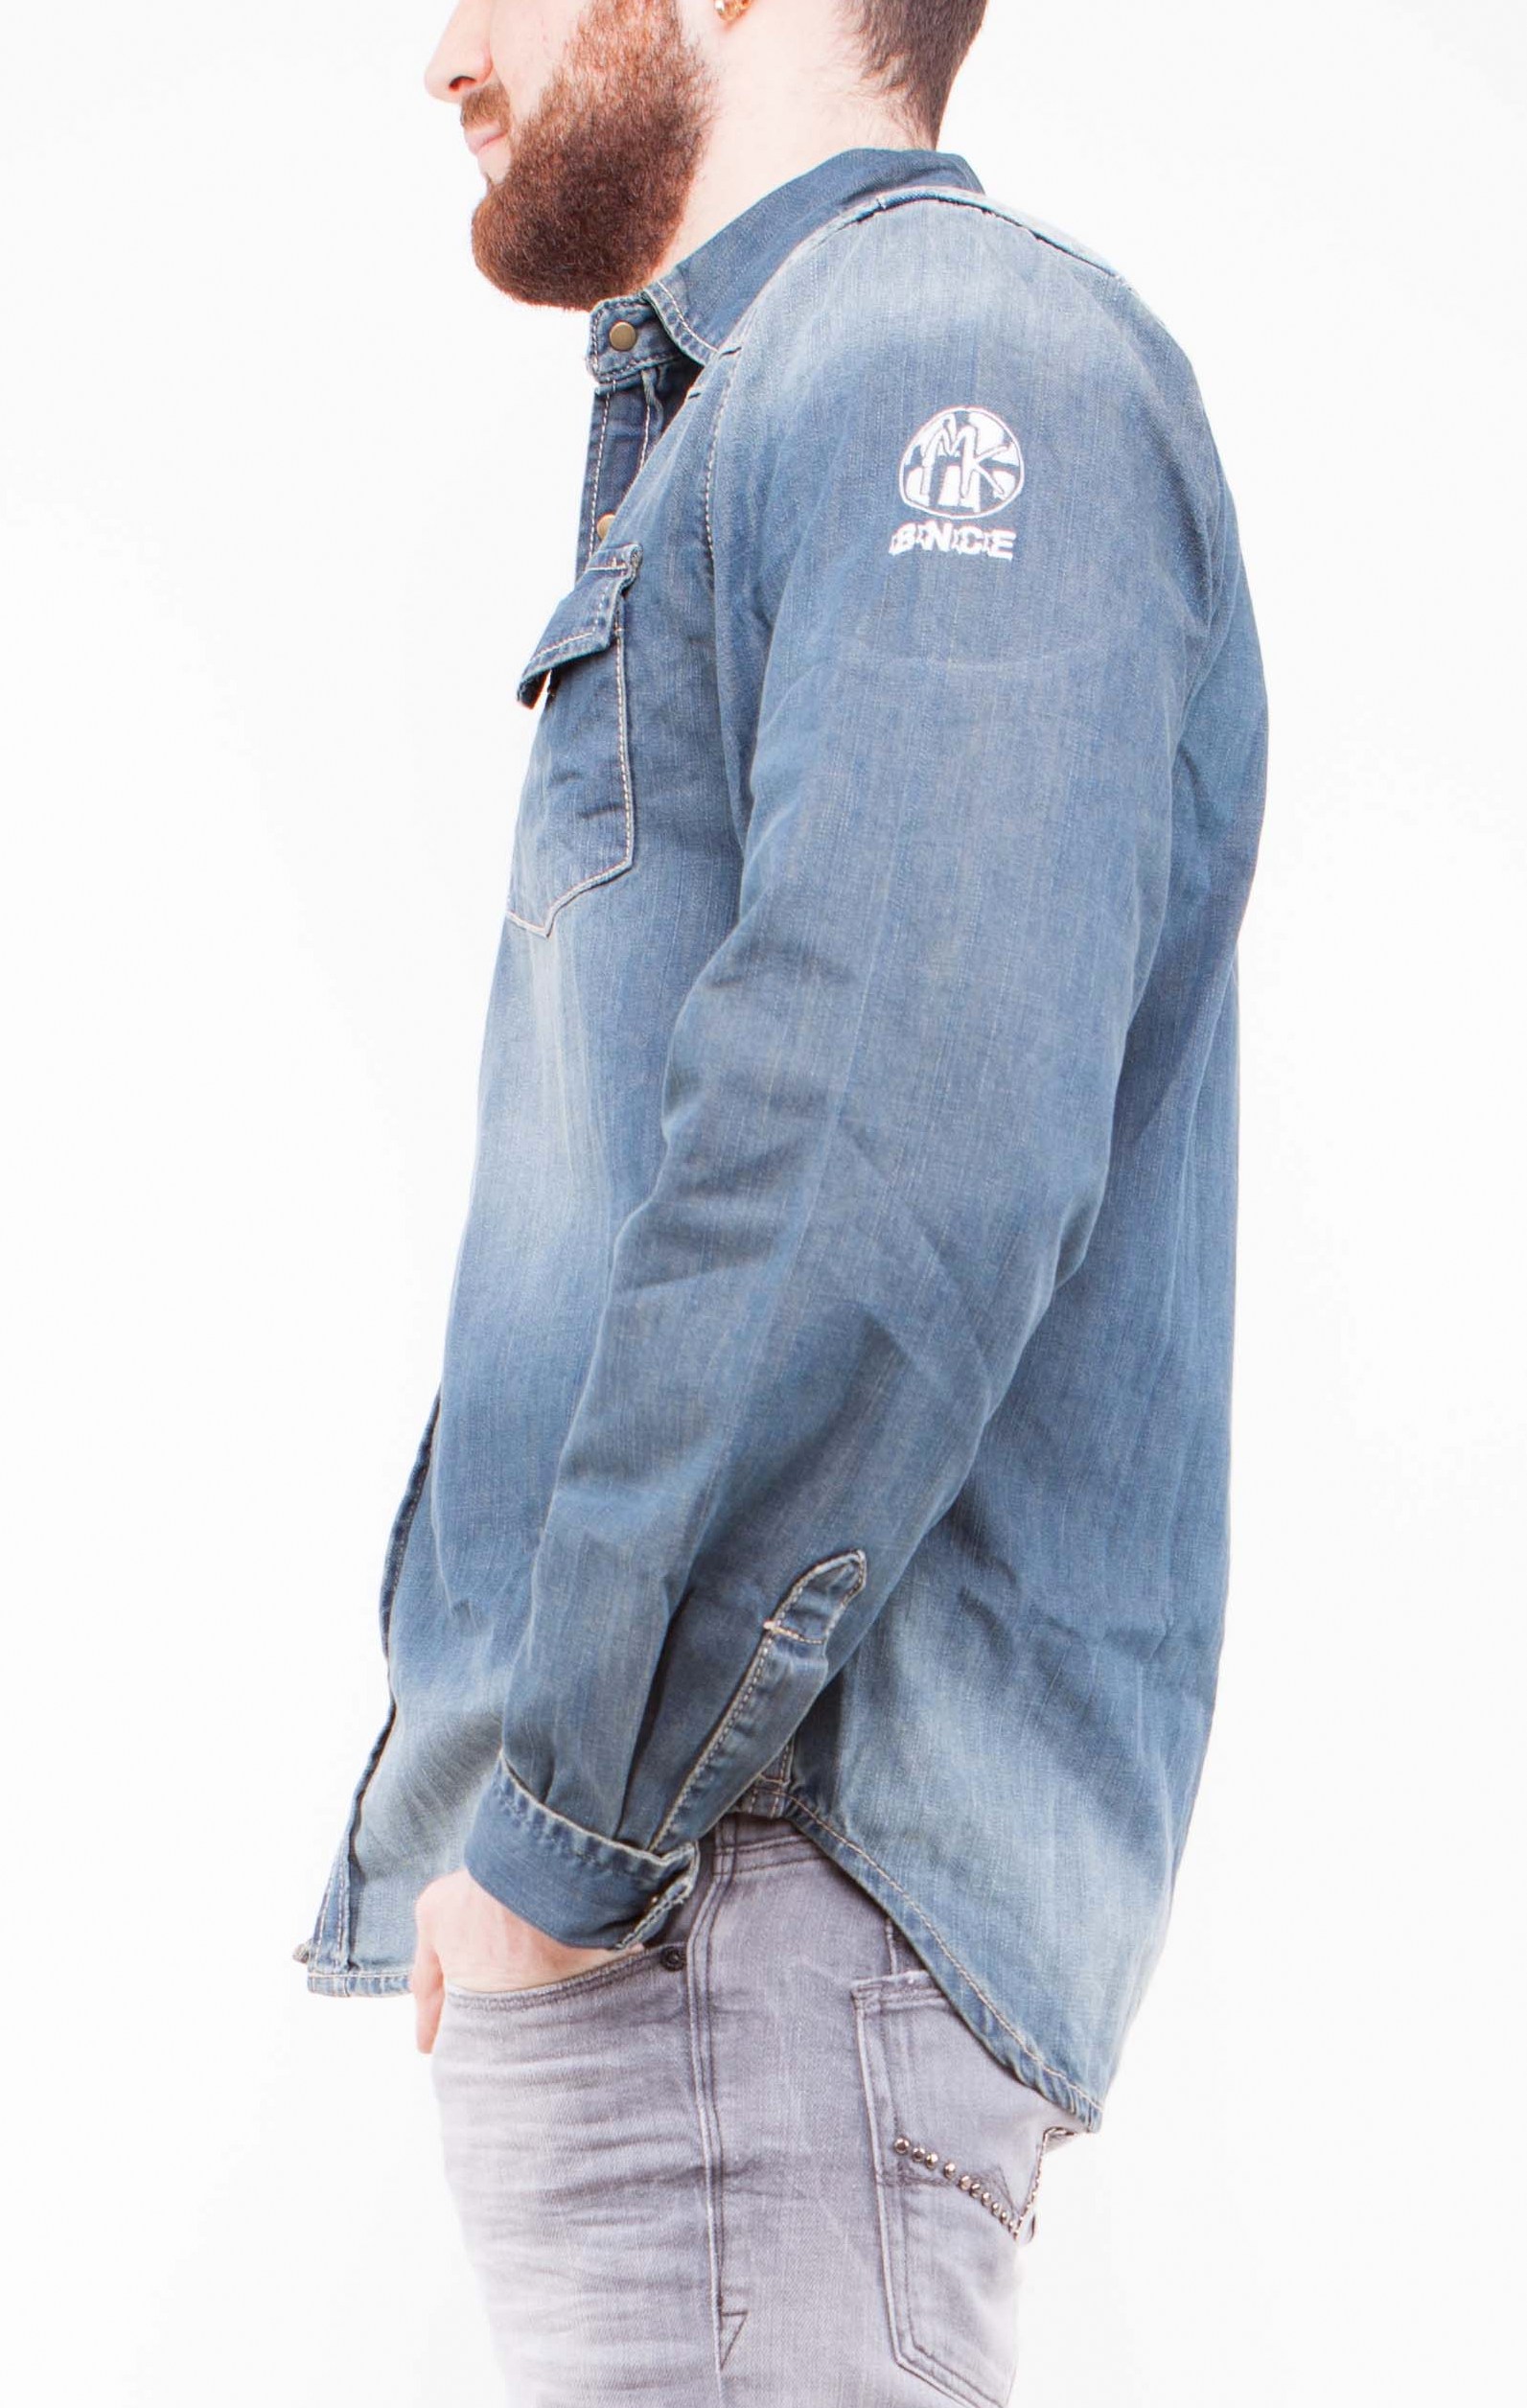 Chemise jeans - Homme - MK BNCE - Fashion - Qualit&eacute; - d&eacute;lav&eacute;